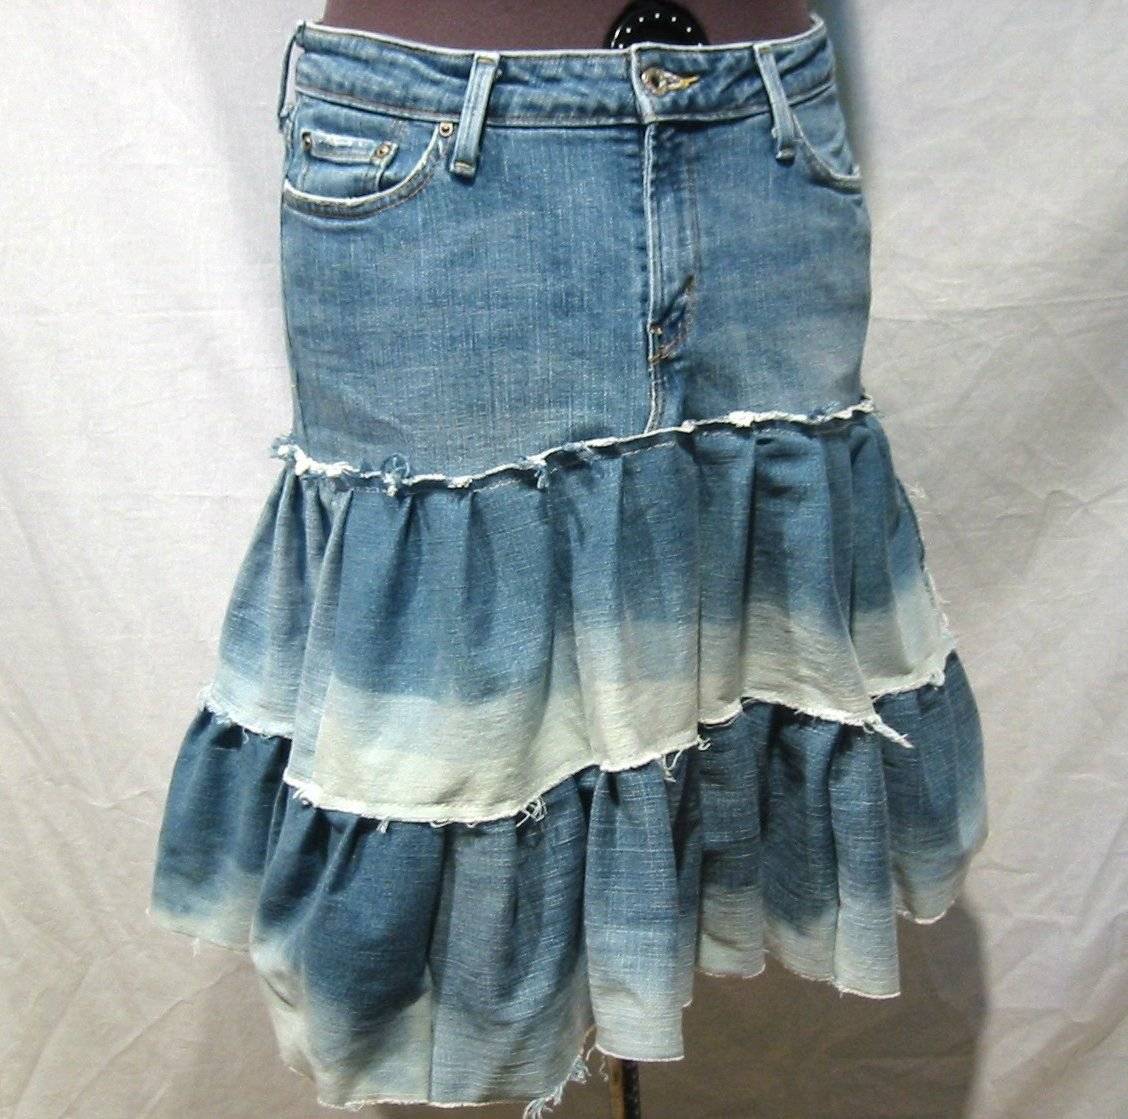 Модные детские юбки из старых джинс – выкройки и описание